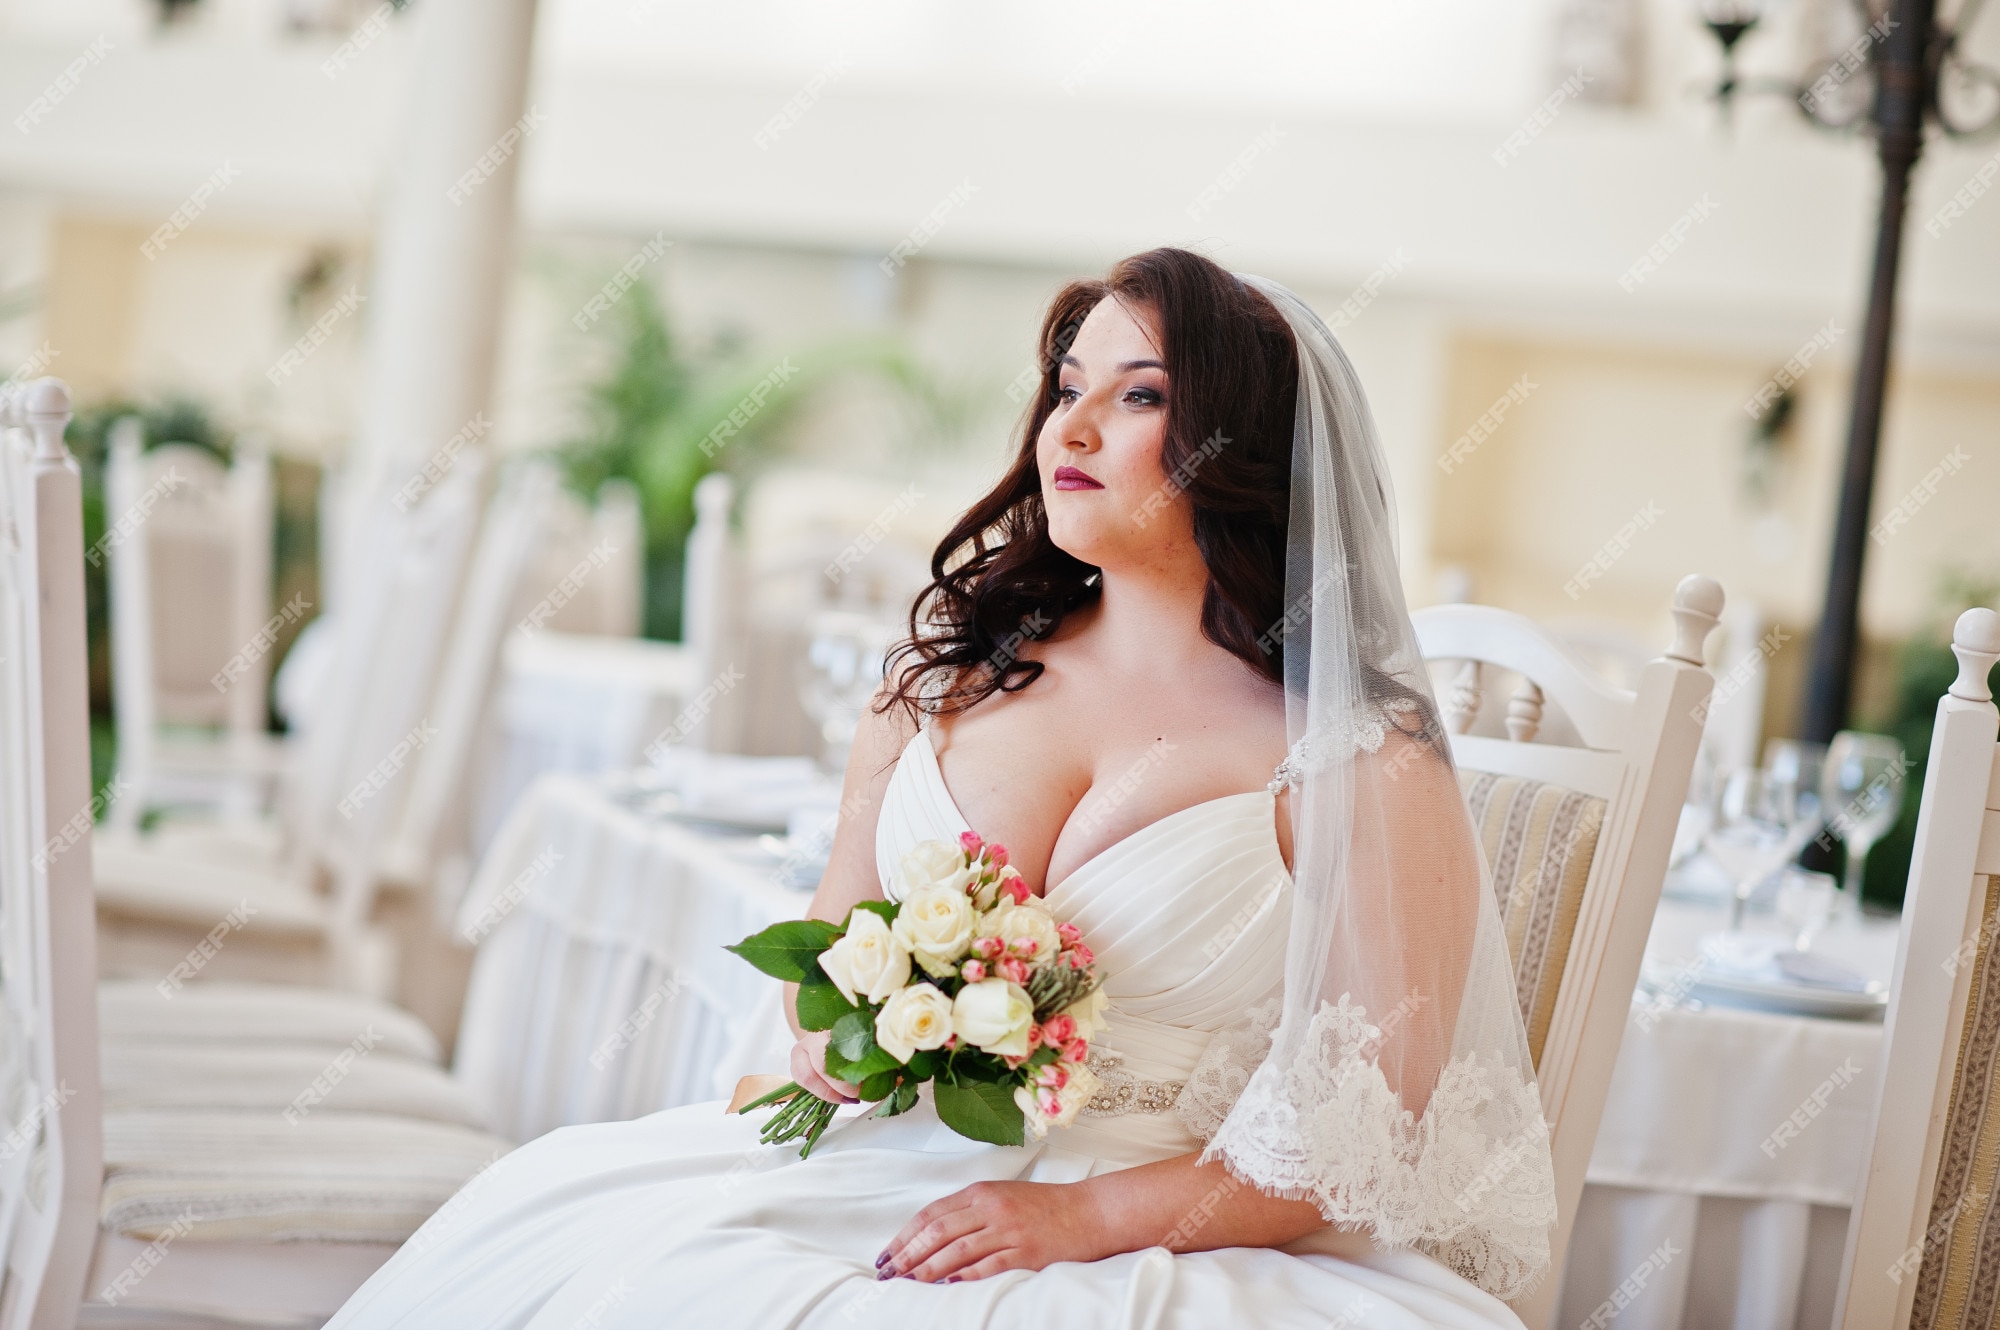 dlovan ahmad share big boobs wedding dress photos